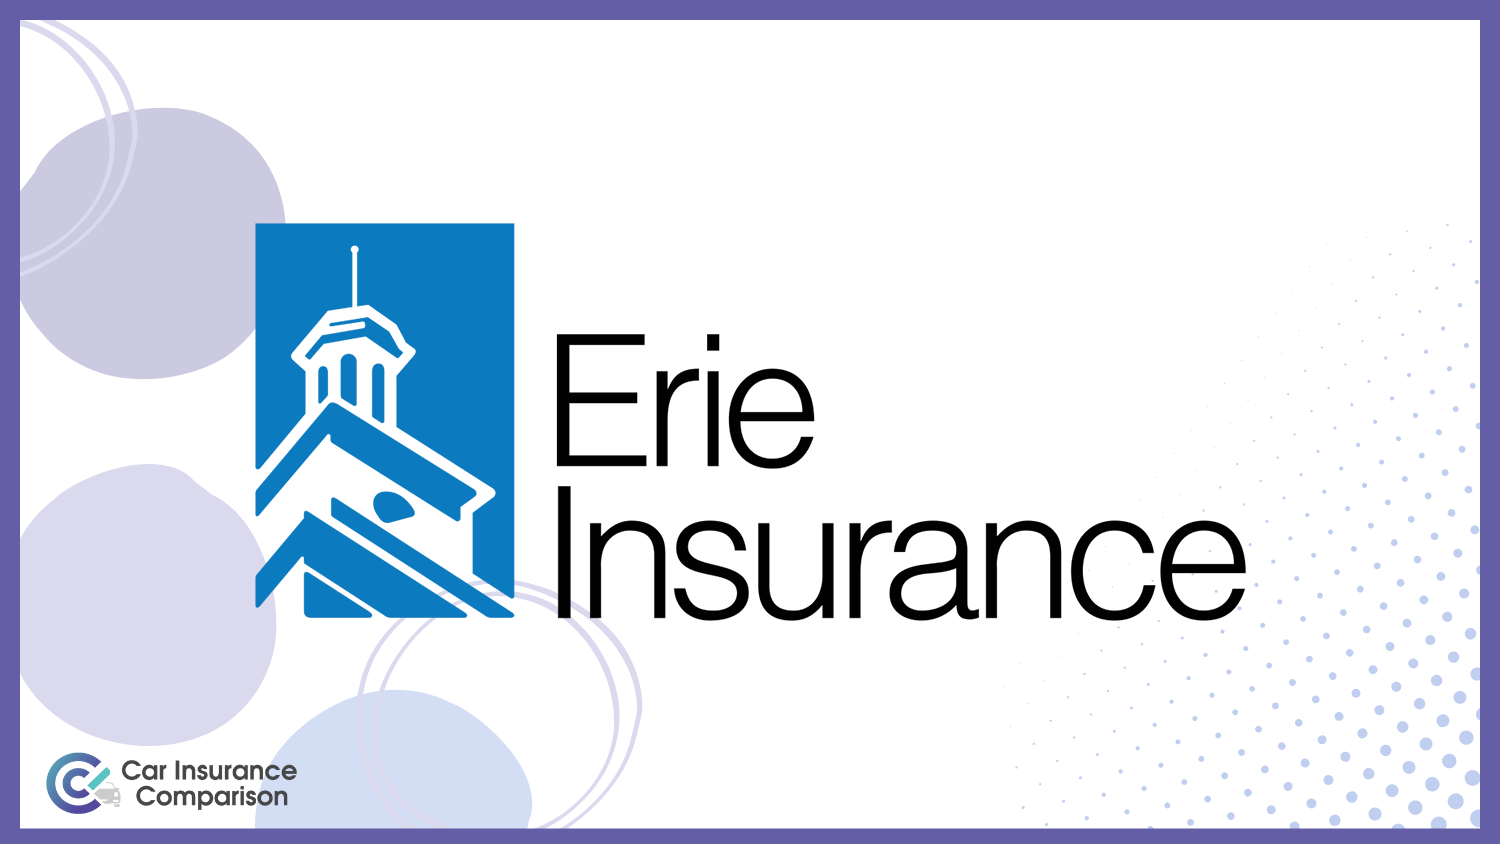 Best Amazon Flex Delivery Car Insurance: Erie